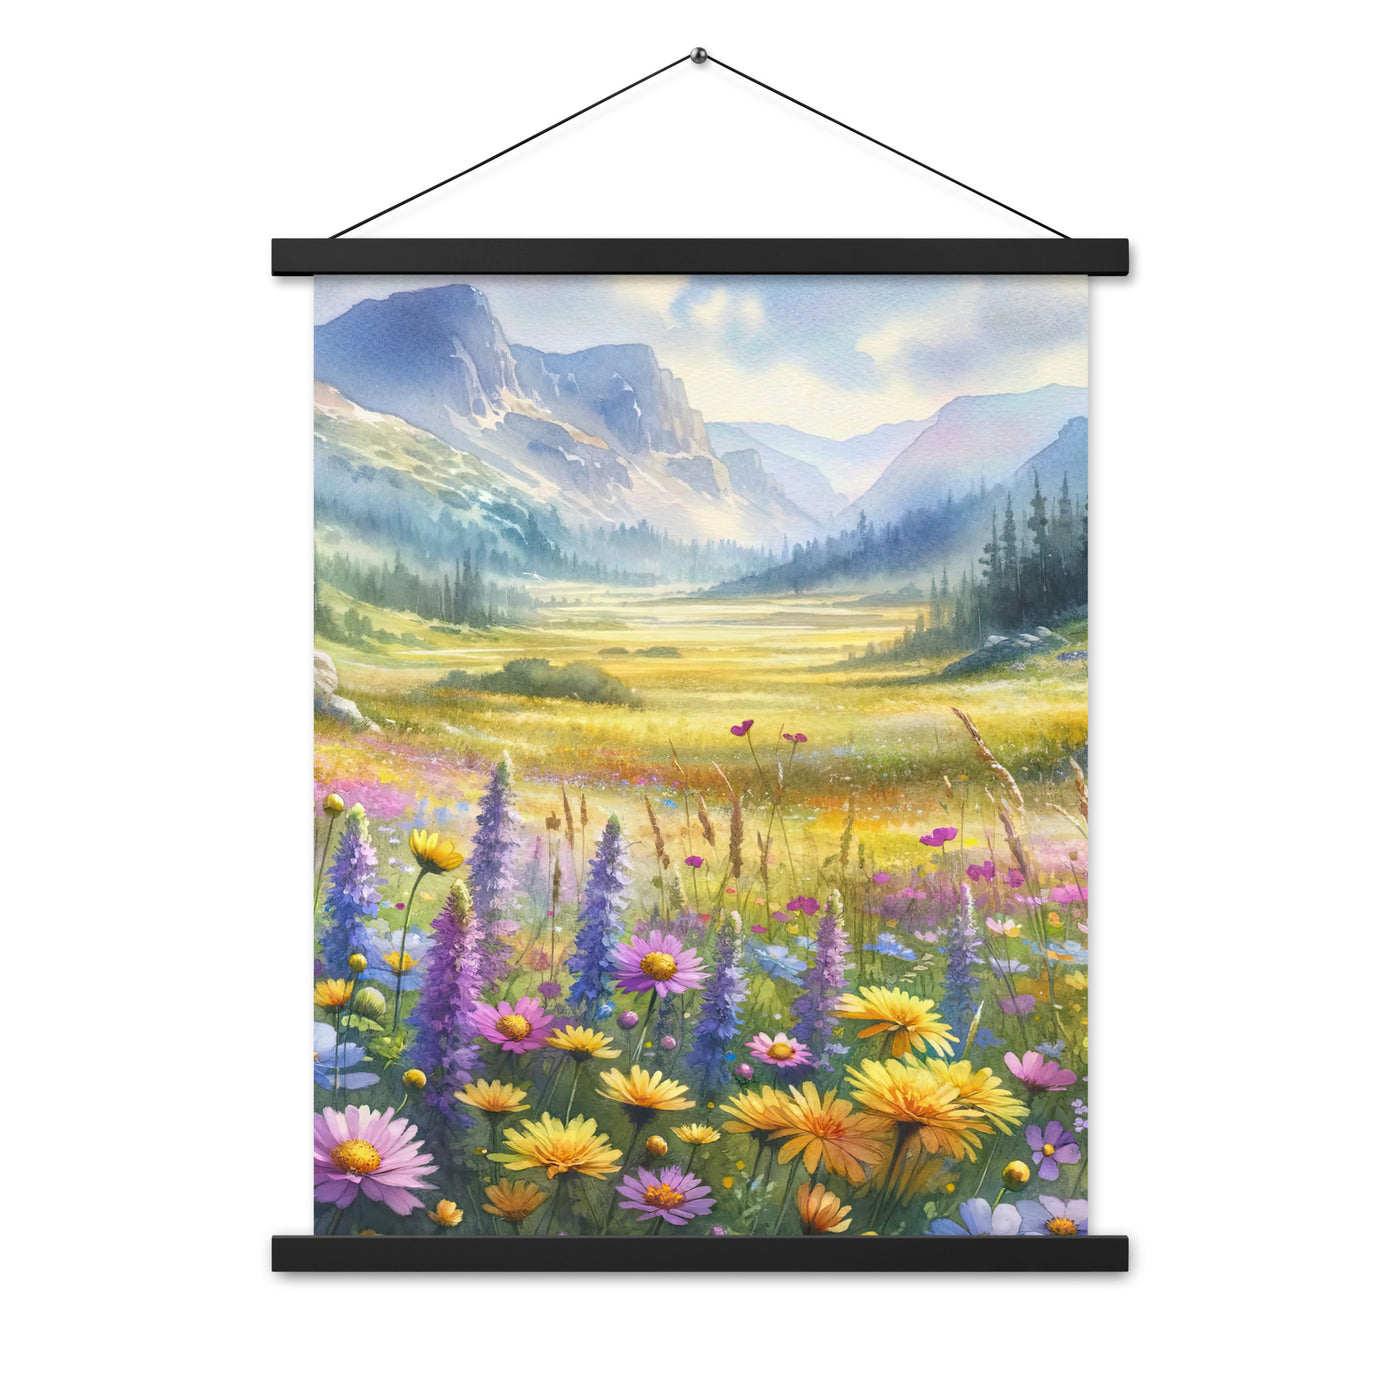 Aquarell einer Almwiese in Ruhe, Wildblumenteppich in Gelb, Lila, Rosa - Premium Poster mit Aufhängung berge xxx yyy zzz 45.7 x 61 cm